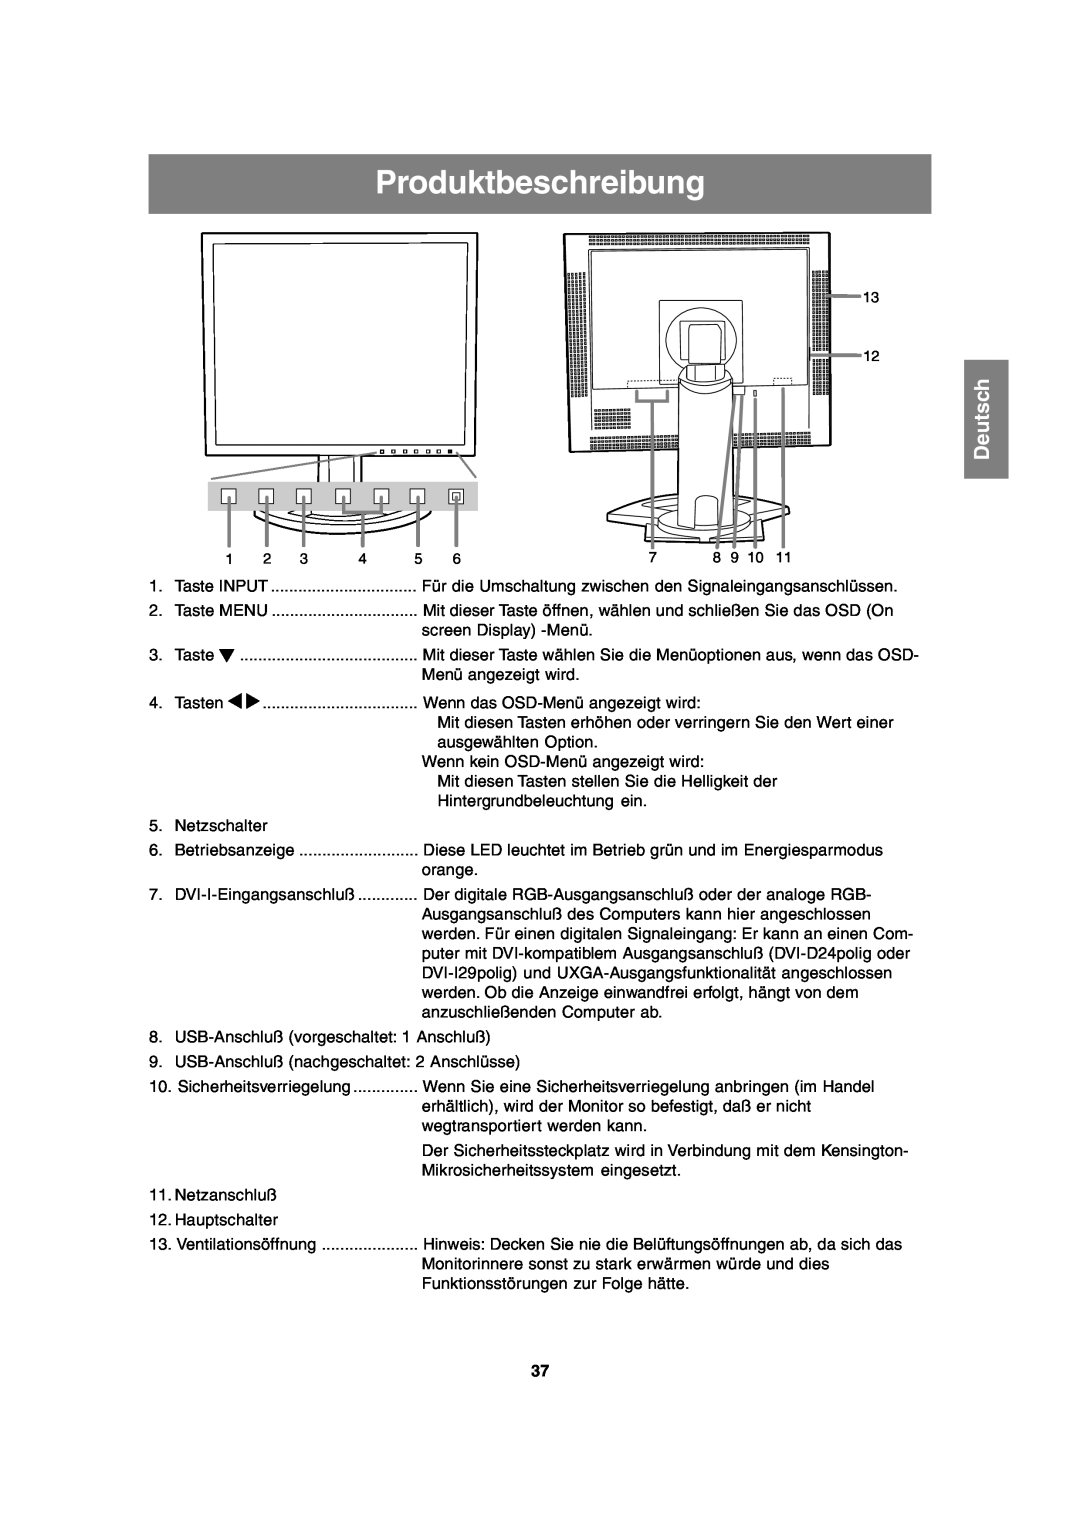 Sharp LL-T2020 operation manual Produktbeschreibung, Deutsch 